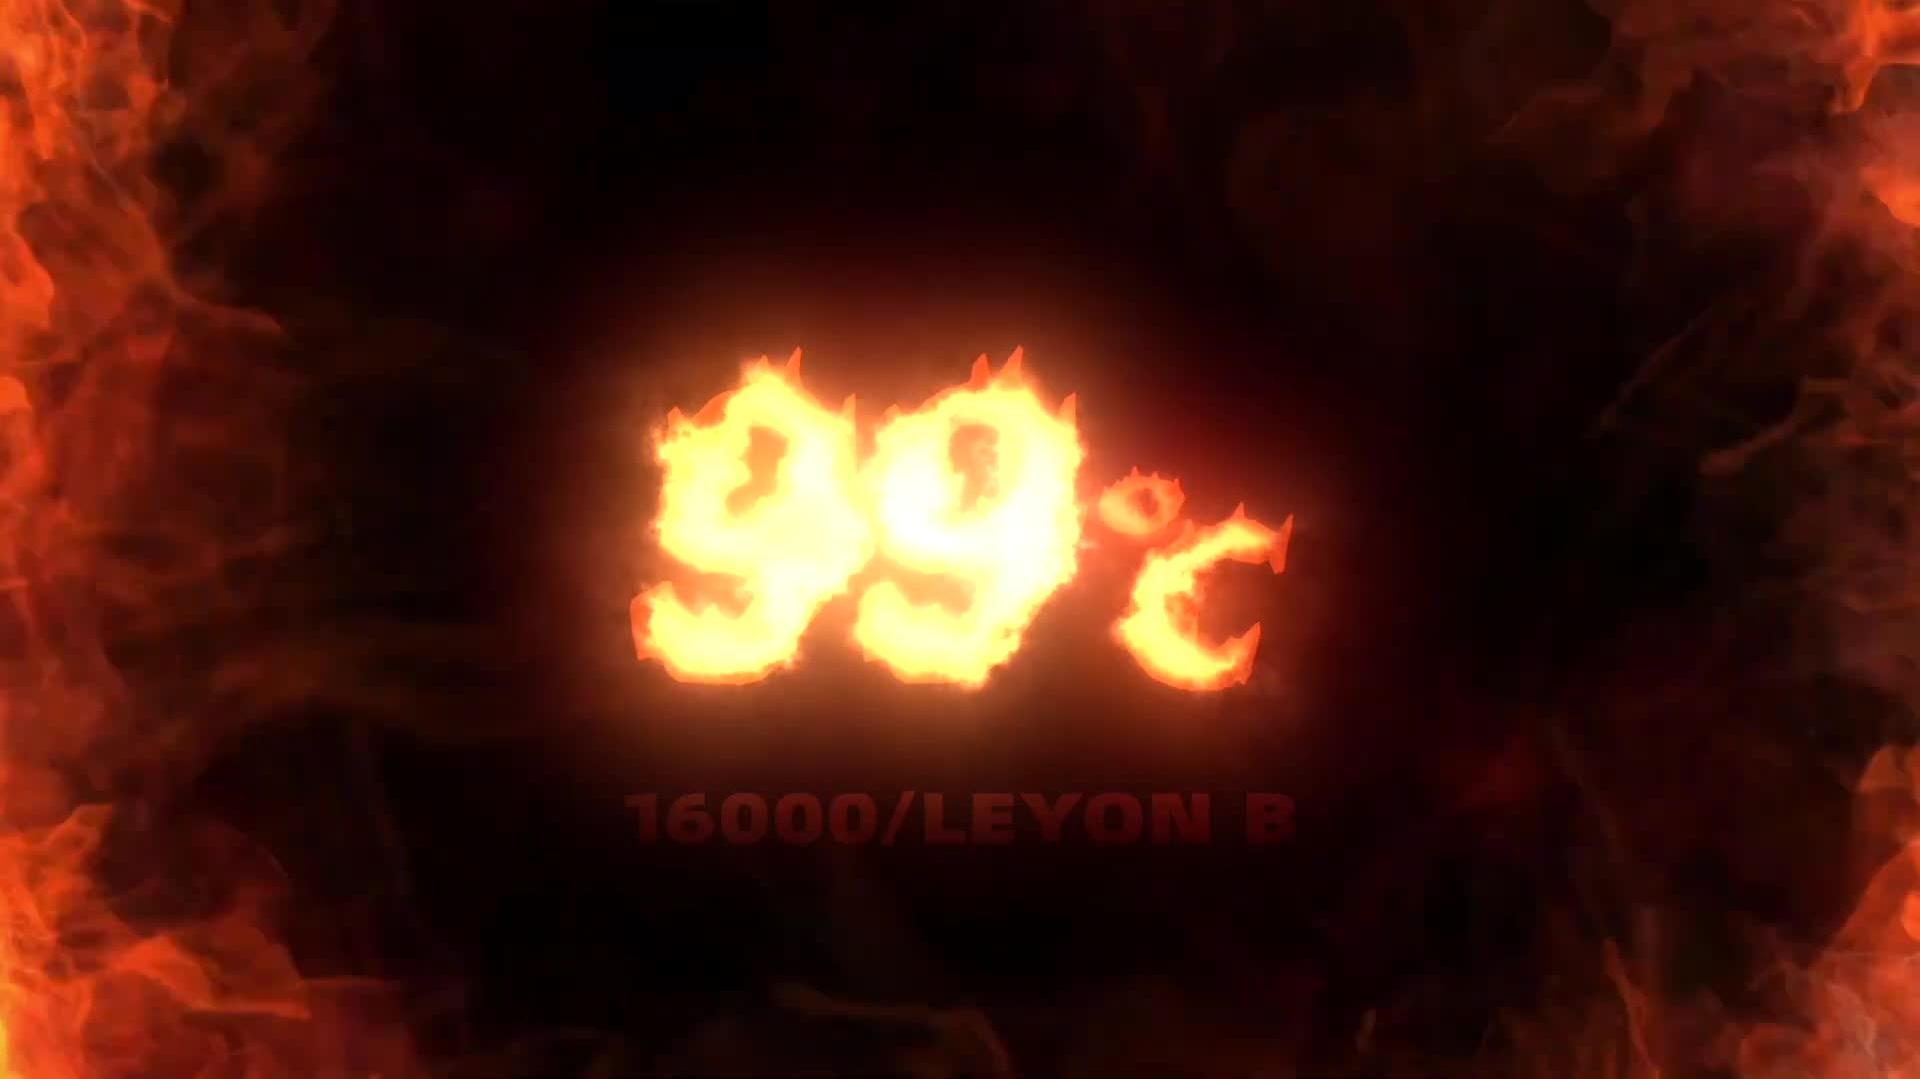 Leyon B - 99℃